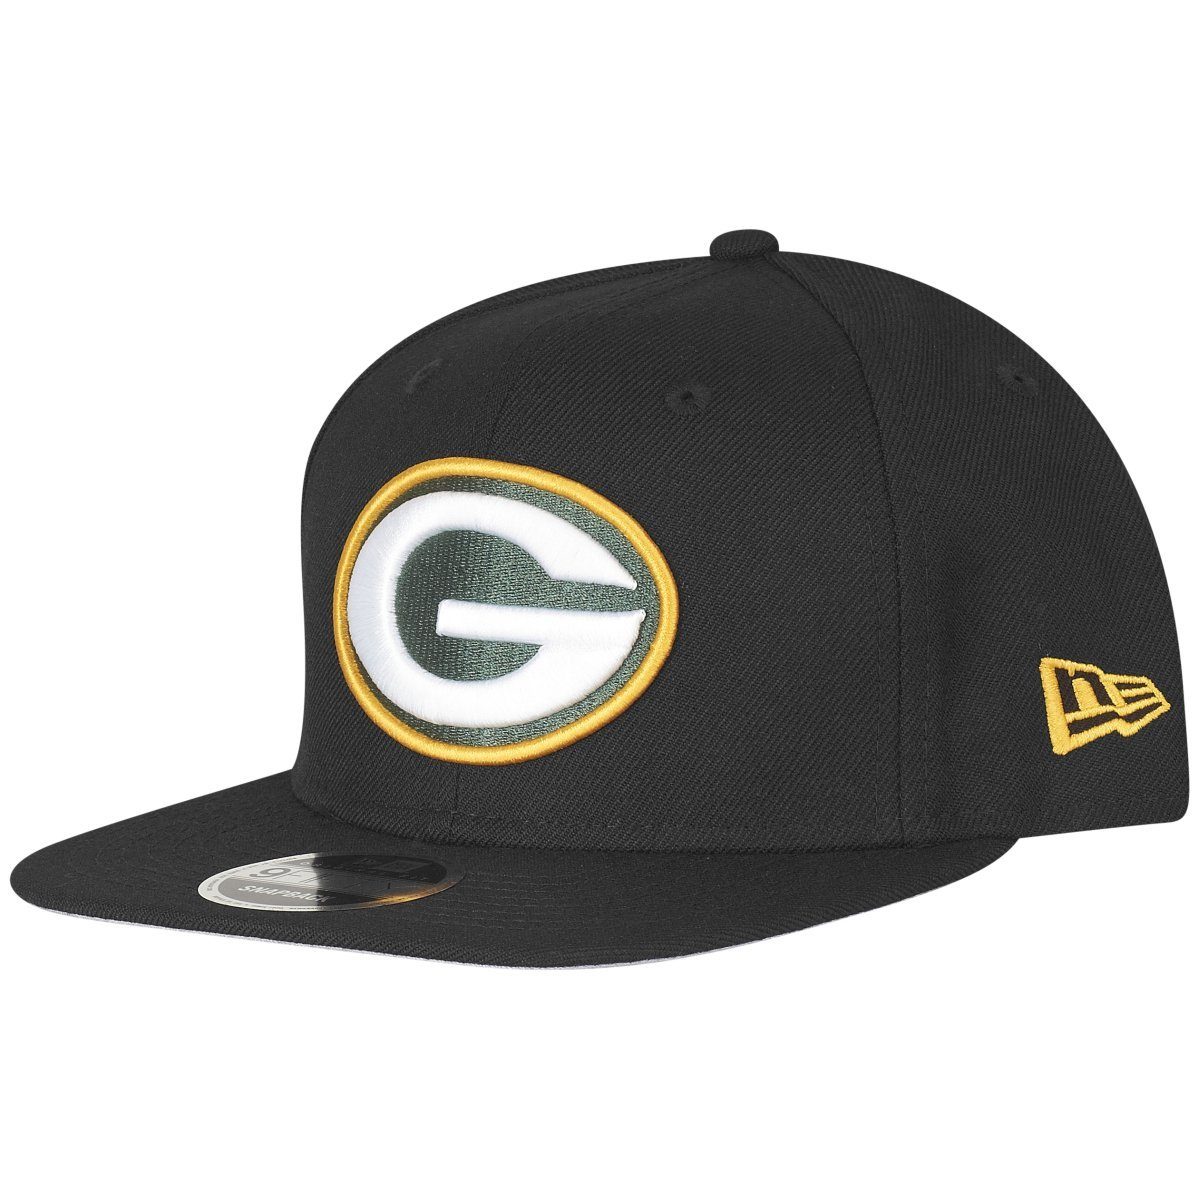 New Era Snapback Cap OriginalFit Green Bay Packers